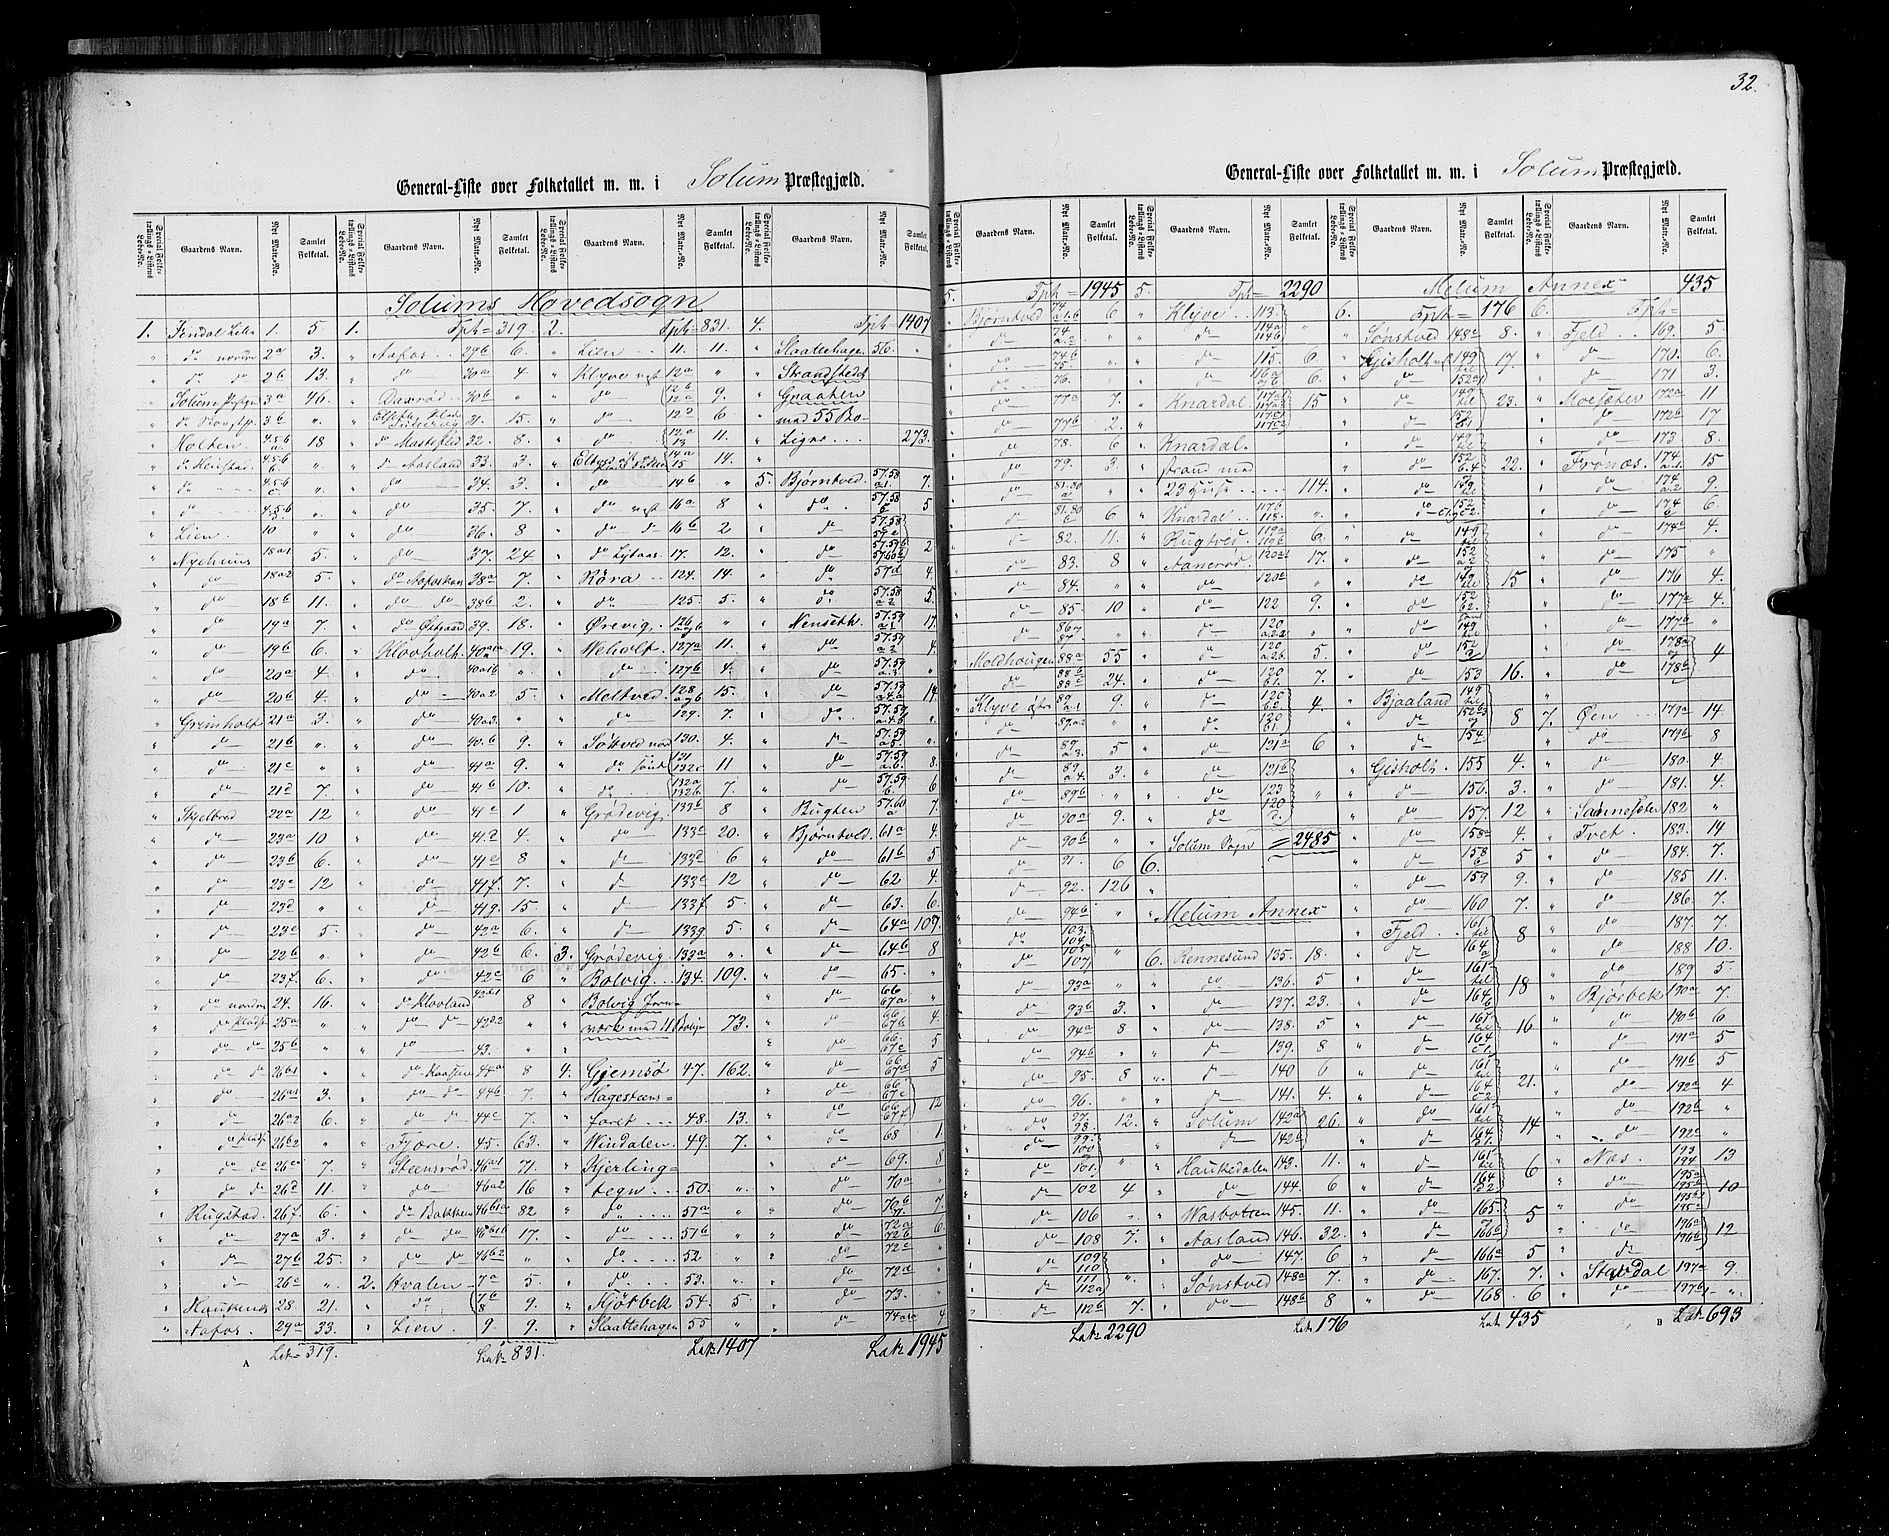 RA, Census 1855, vol. 3: Bratsberg amt, Nedenes amt og Lister og Mandal amt, 1855, p. 32